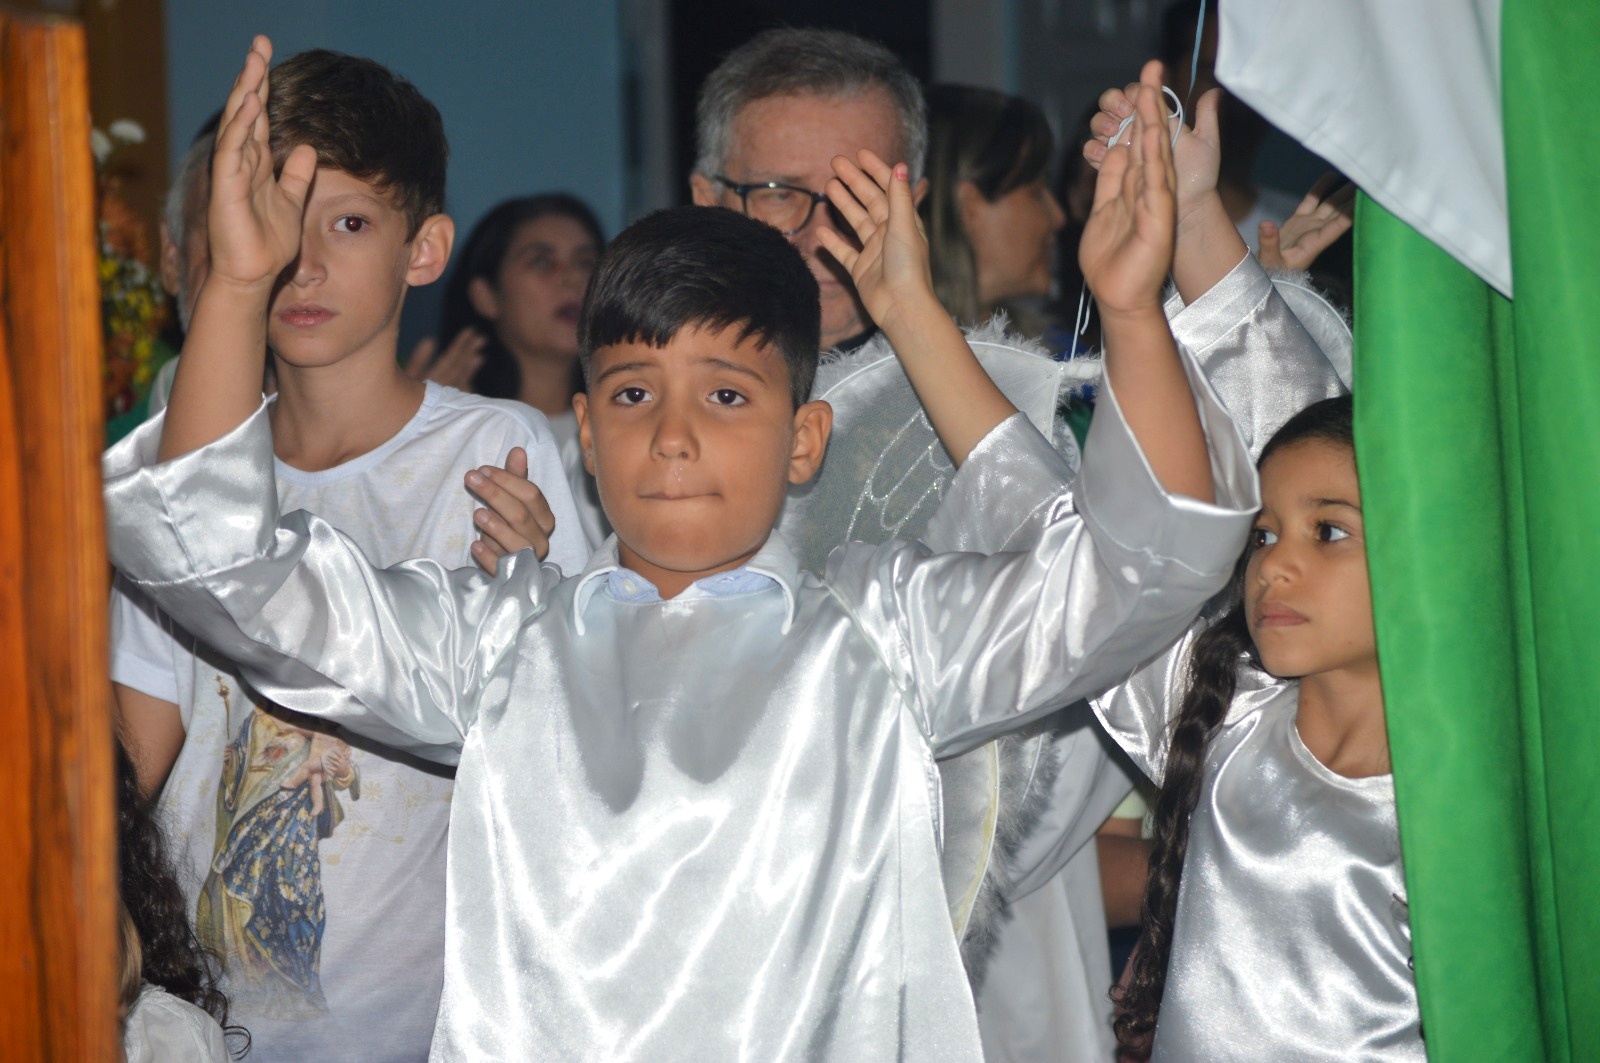 Noite das crianças emocionou fiéis em ST